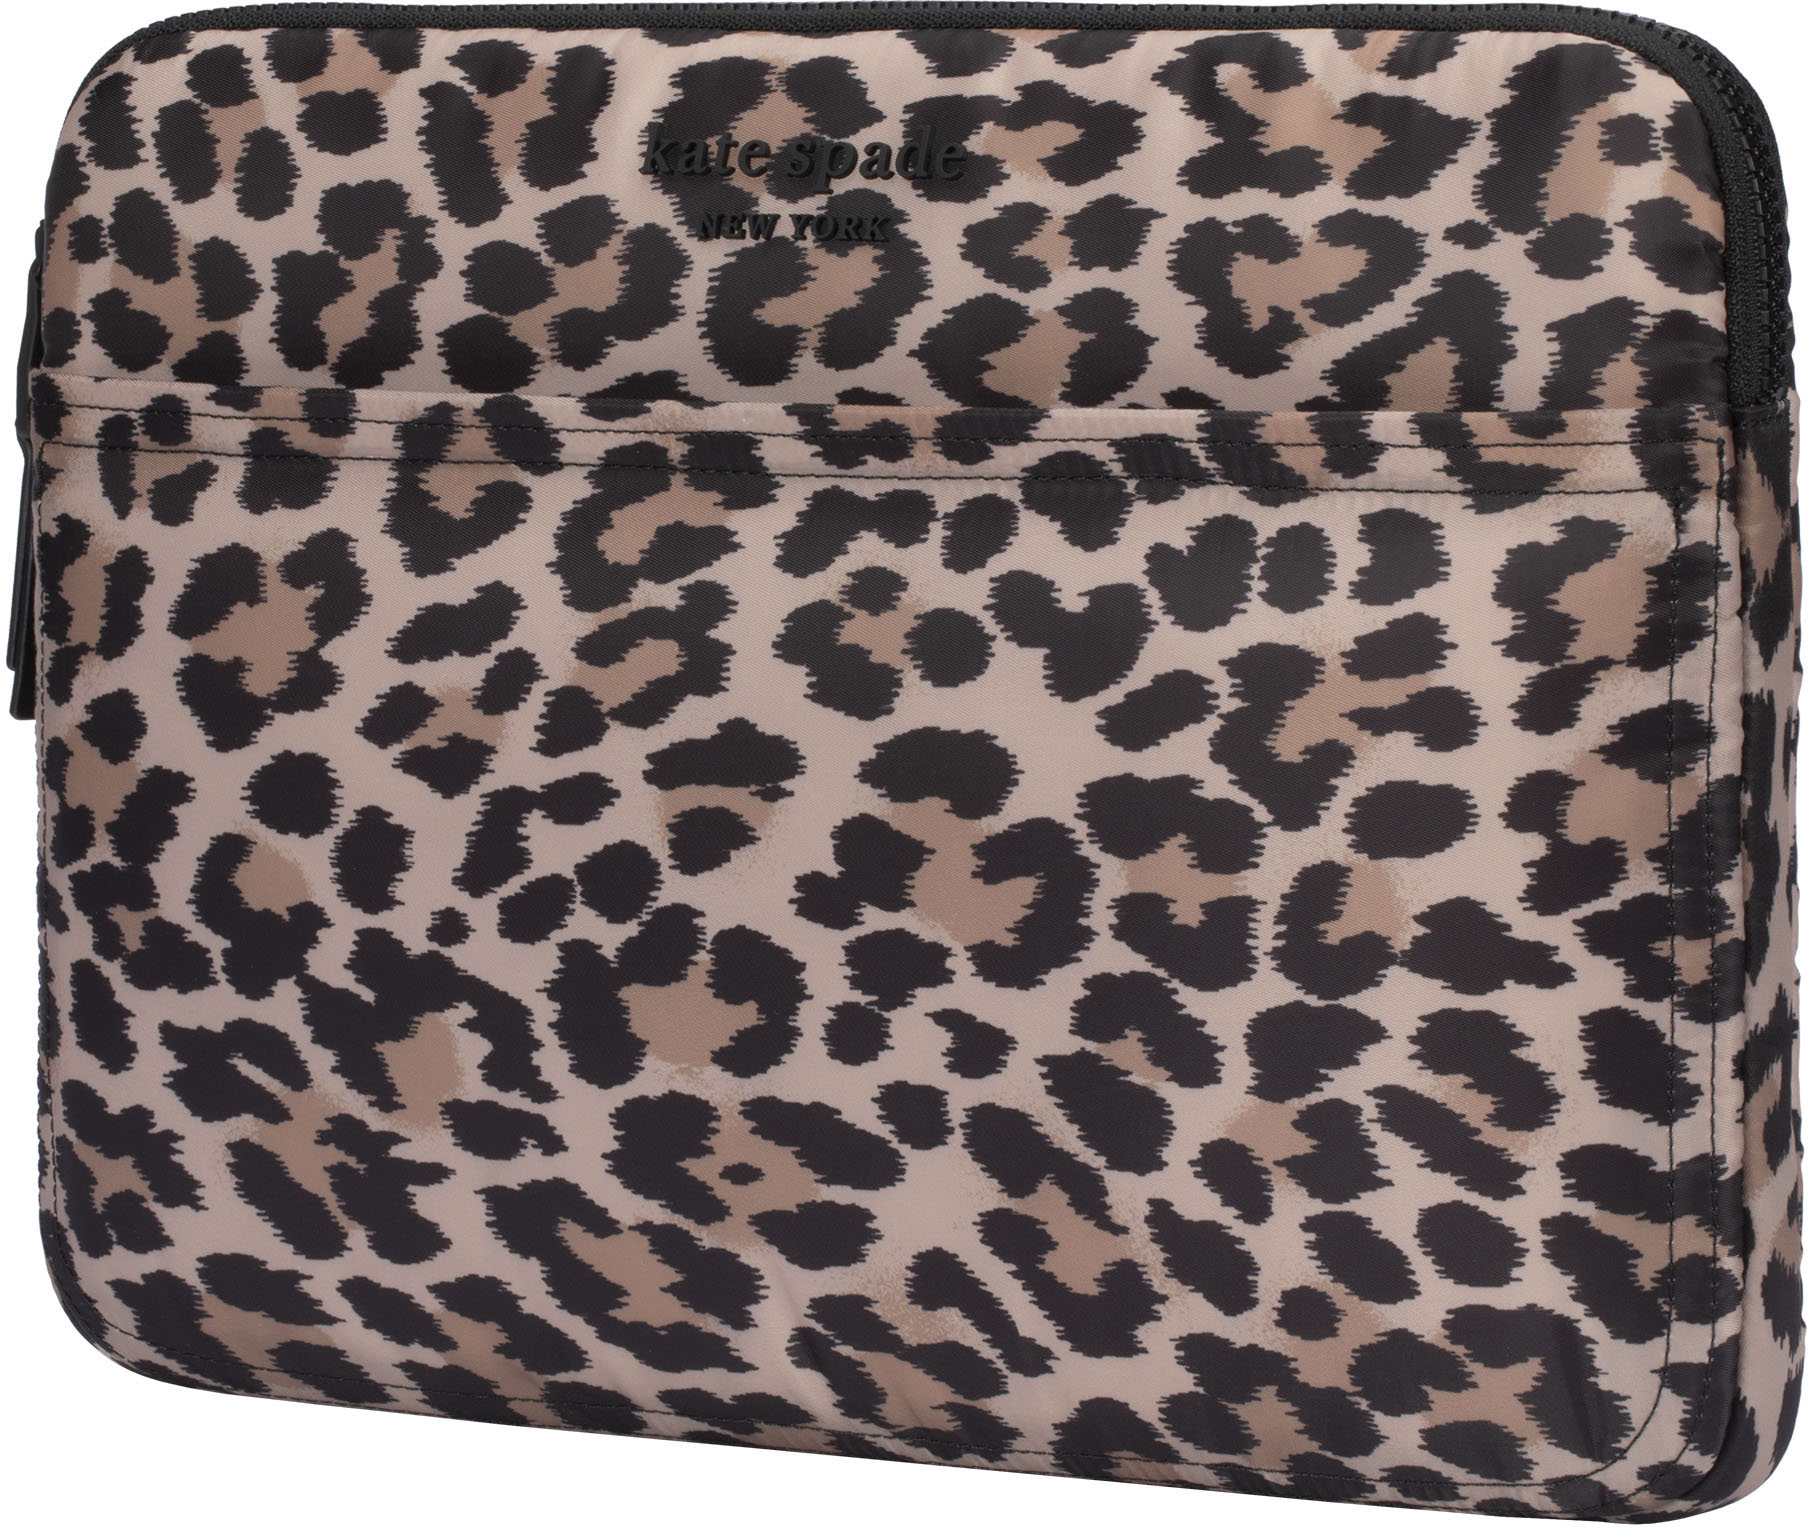  XSKN Leopard Spot Canvas Fabric Zipper Laptop Sleeve